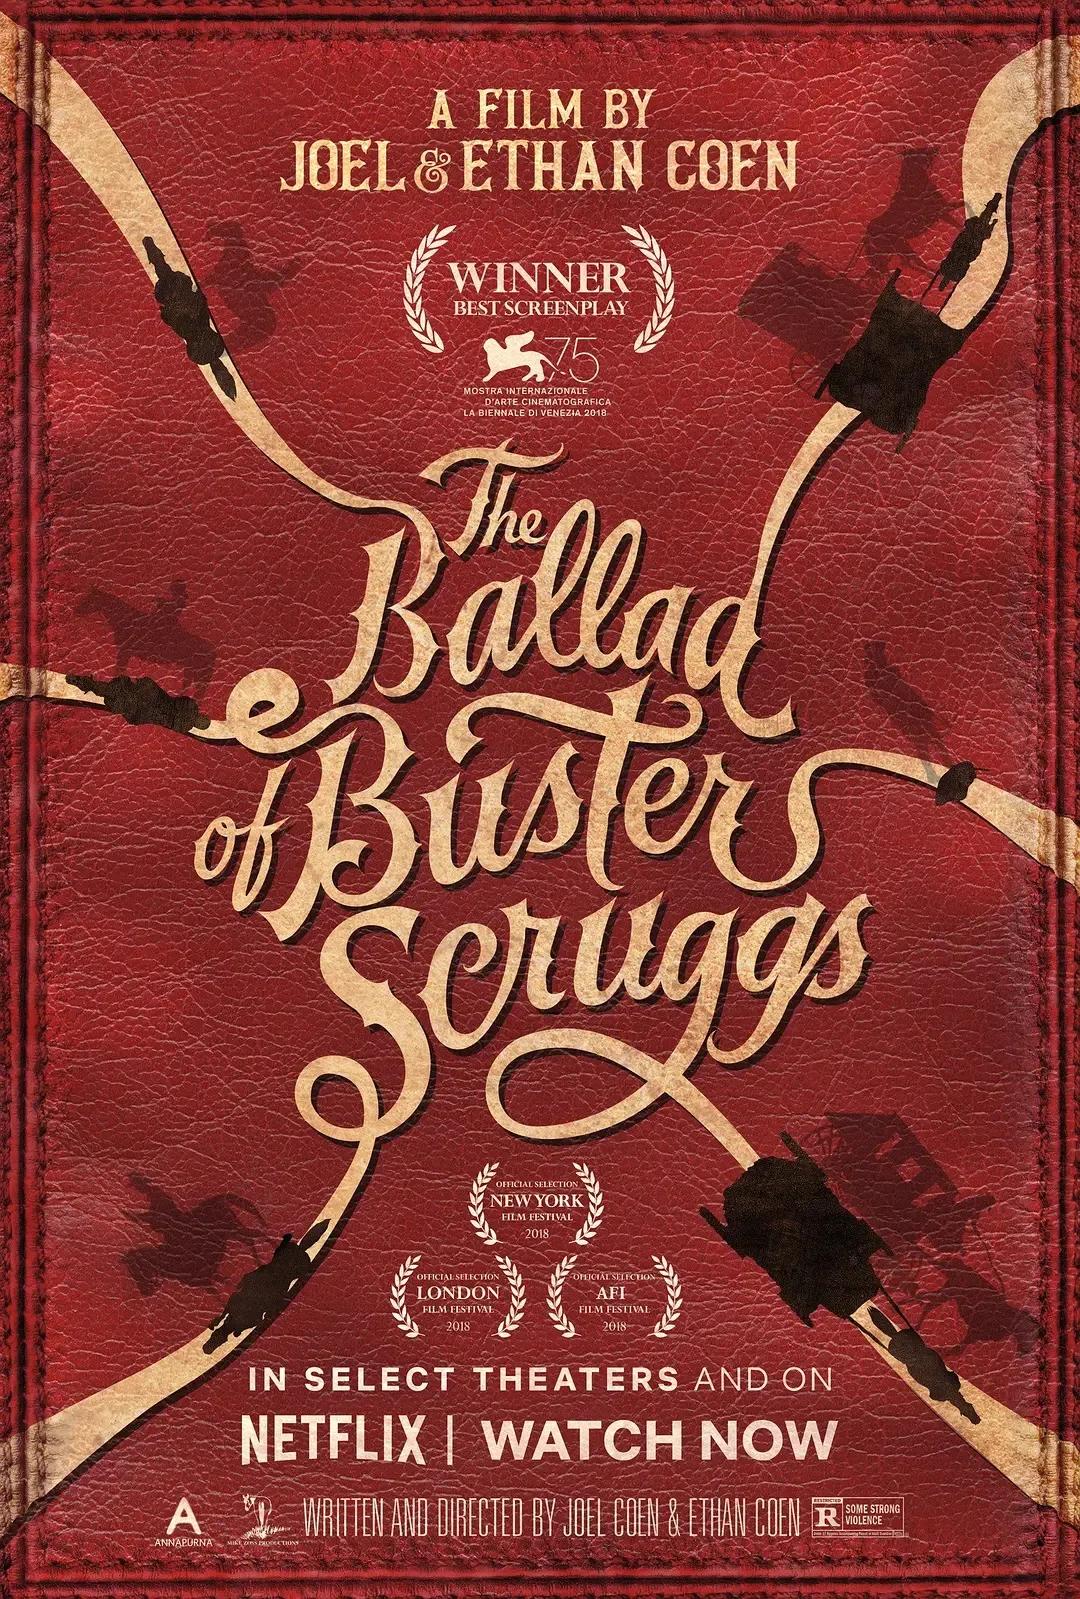 《巴斯特.斯克鲁格斯的歌谣》讲述了发生在旧西部六个不同的故事